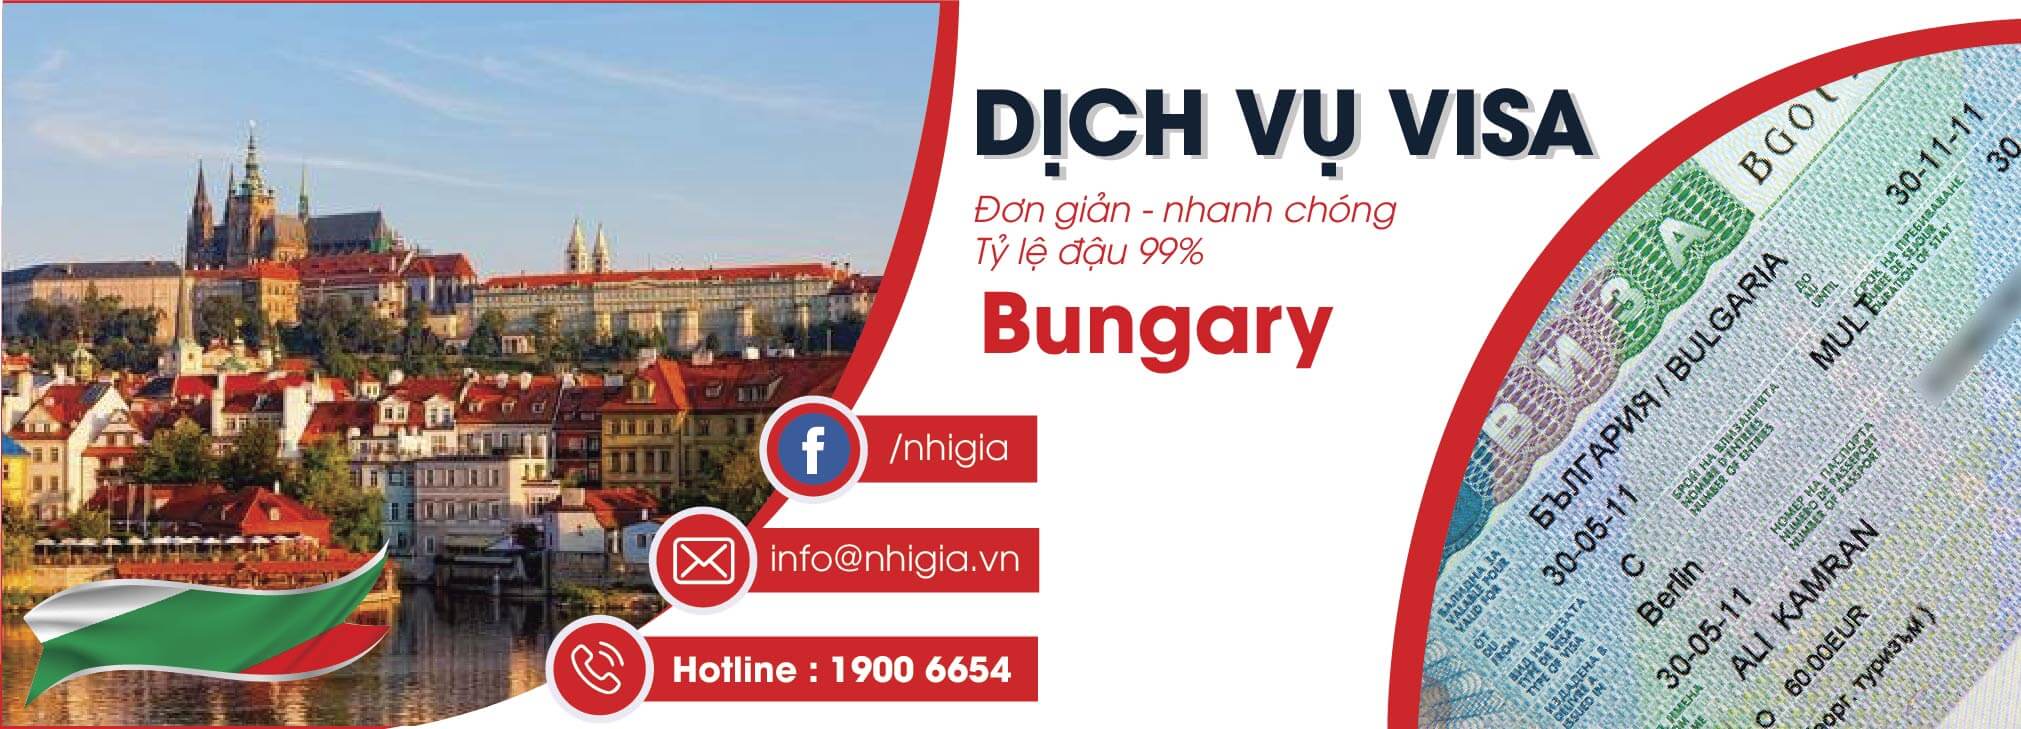 Dịch vụ Visa Bungary